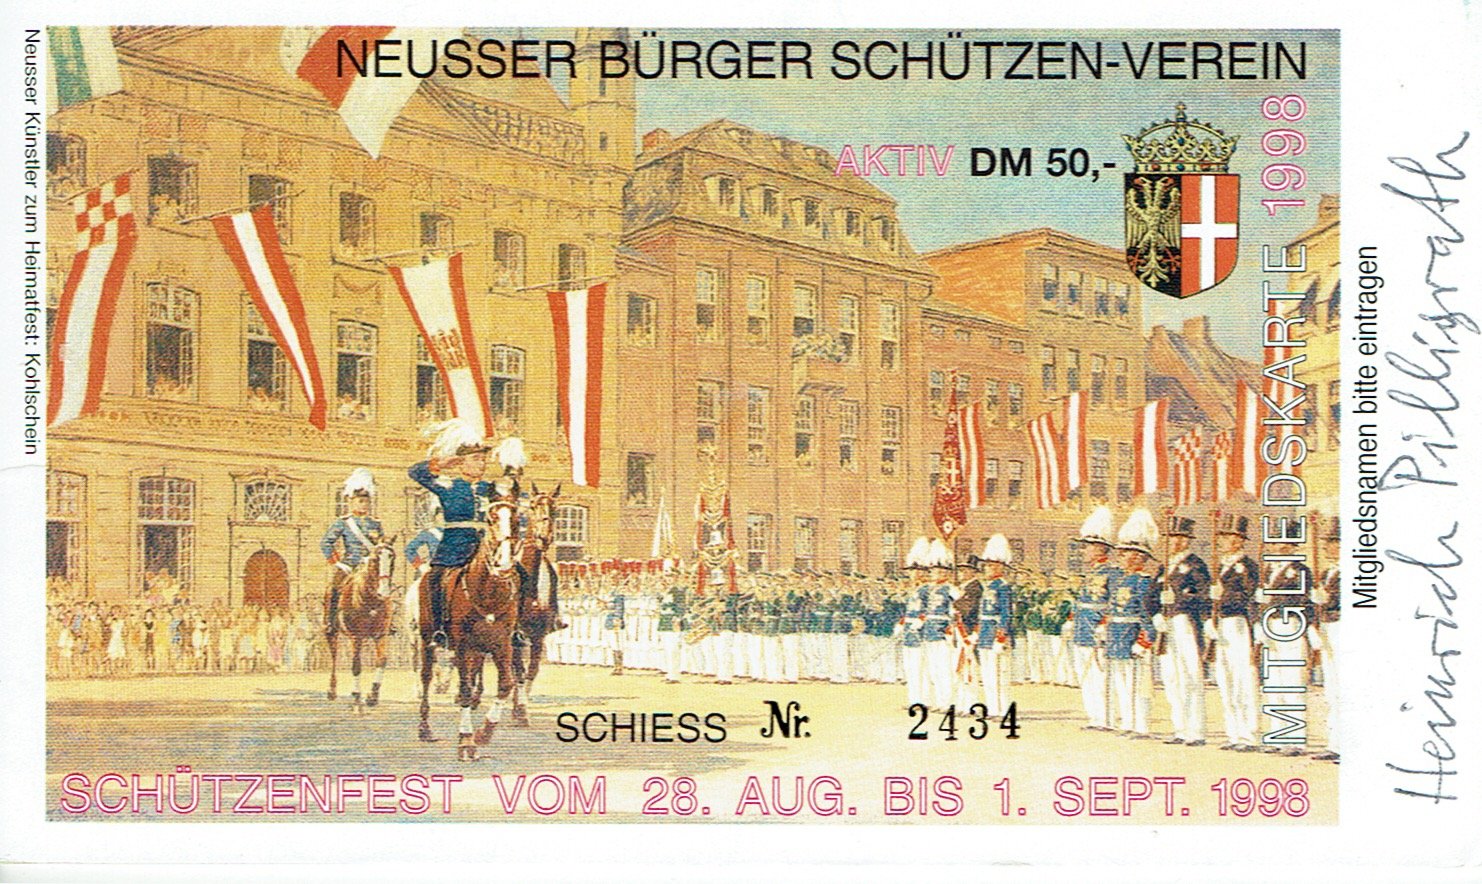 Festkarte Neuss 1998 (aktiv) VS (Rheinisches Schützenmuseum Neuss CC BY-NC-SA)